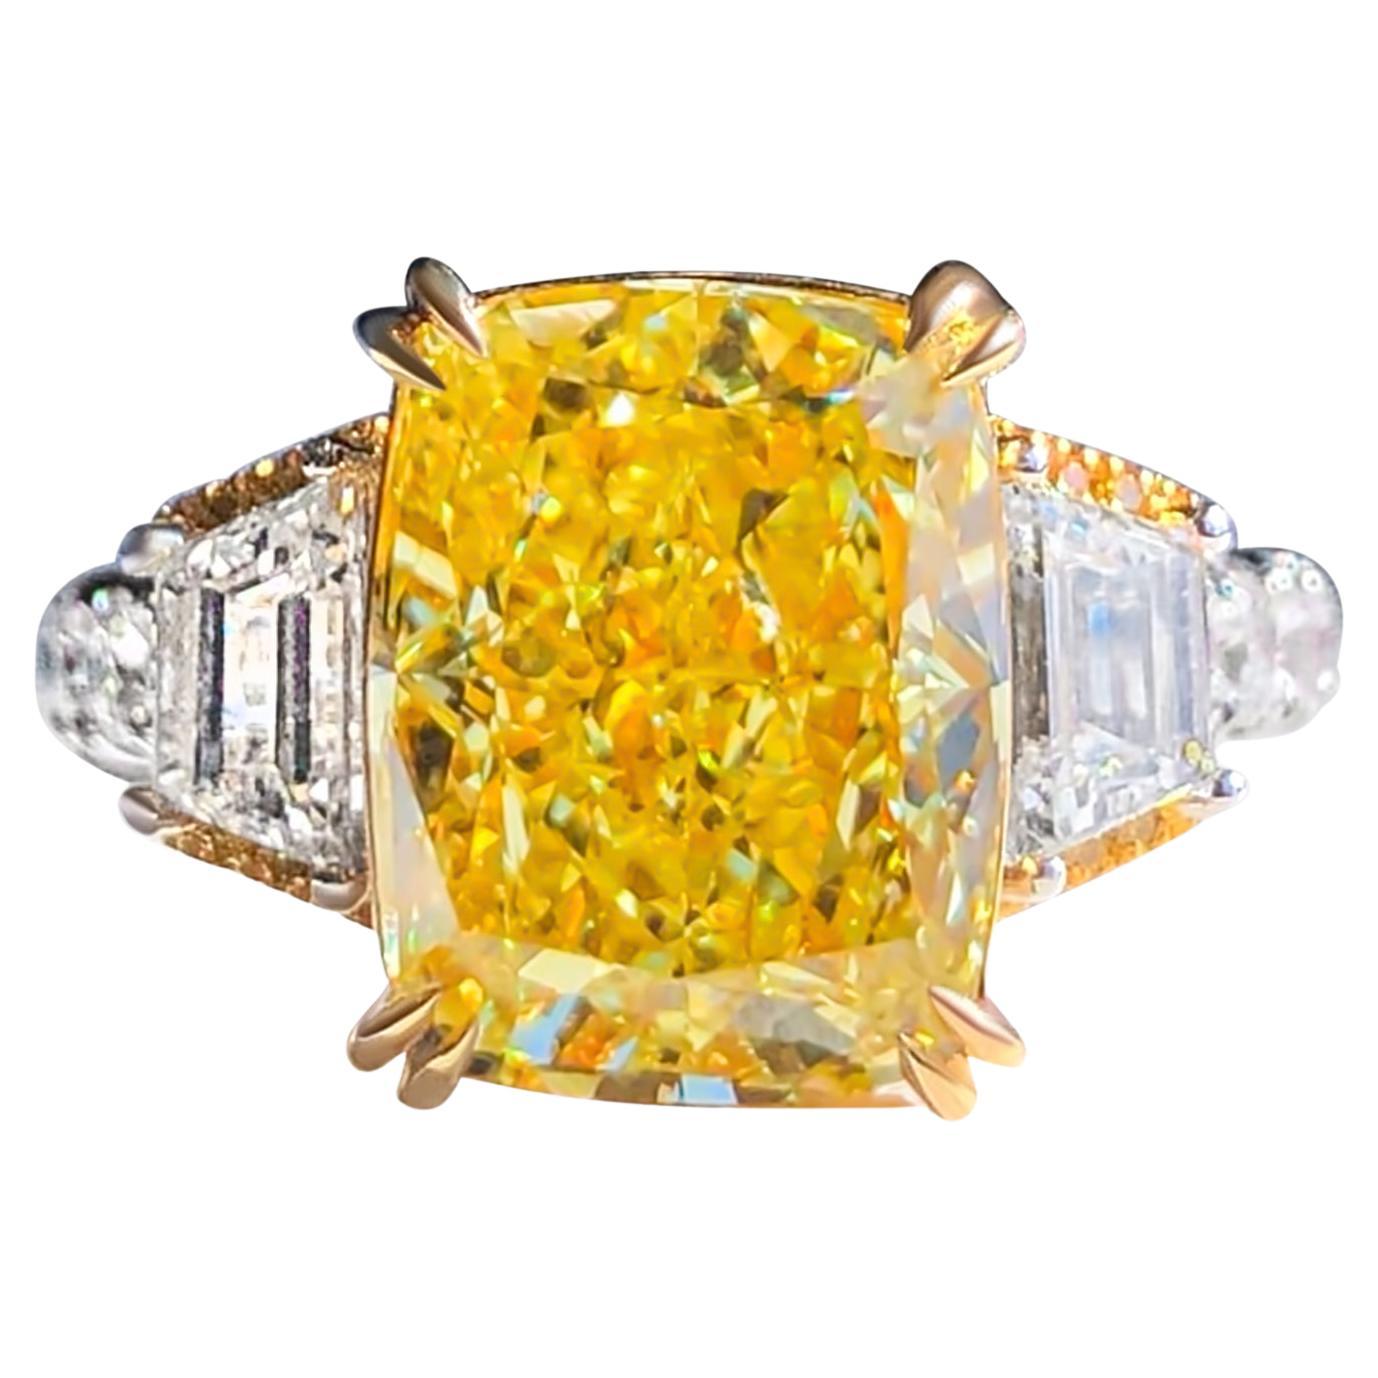 Verlobungsring mit GIA-zertifiziertem 5,01 Karat gelbem Diamanten im Kissenschliff